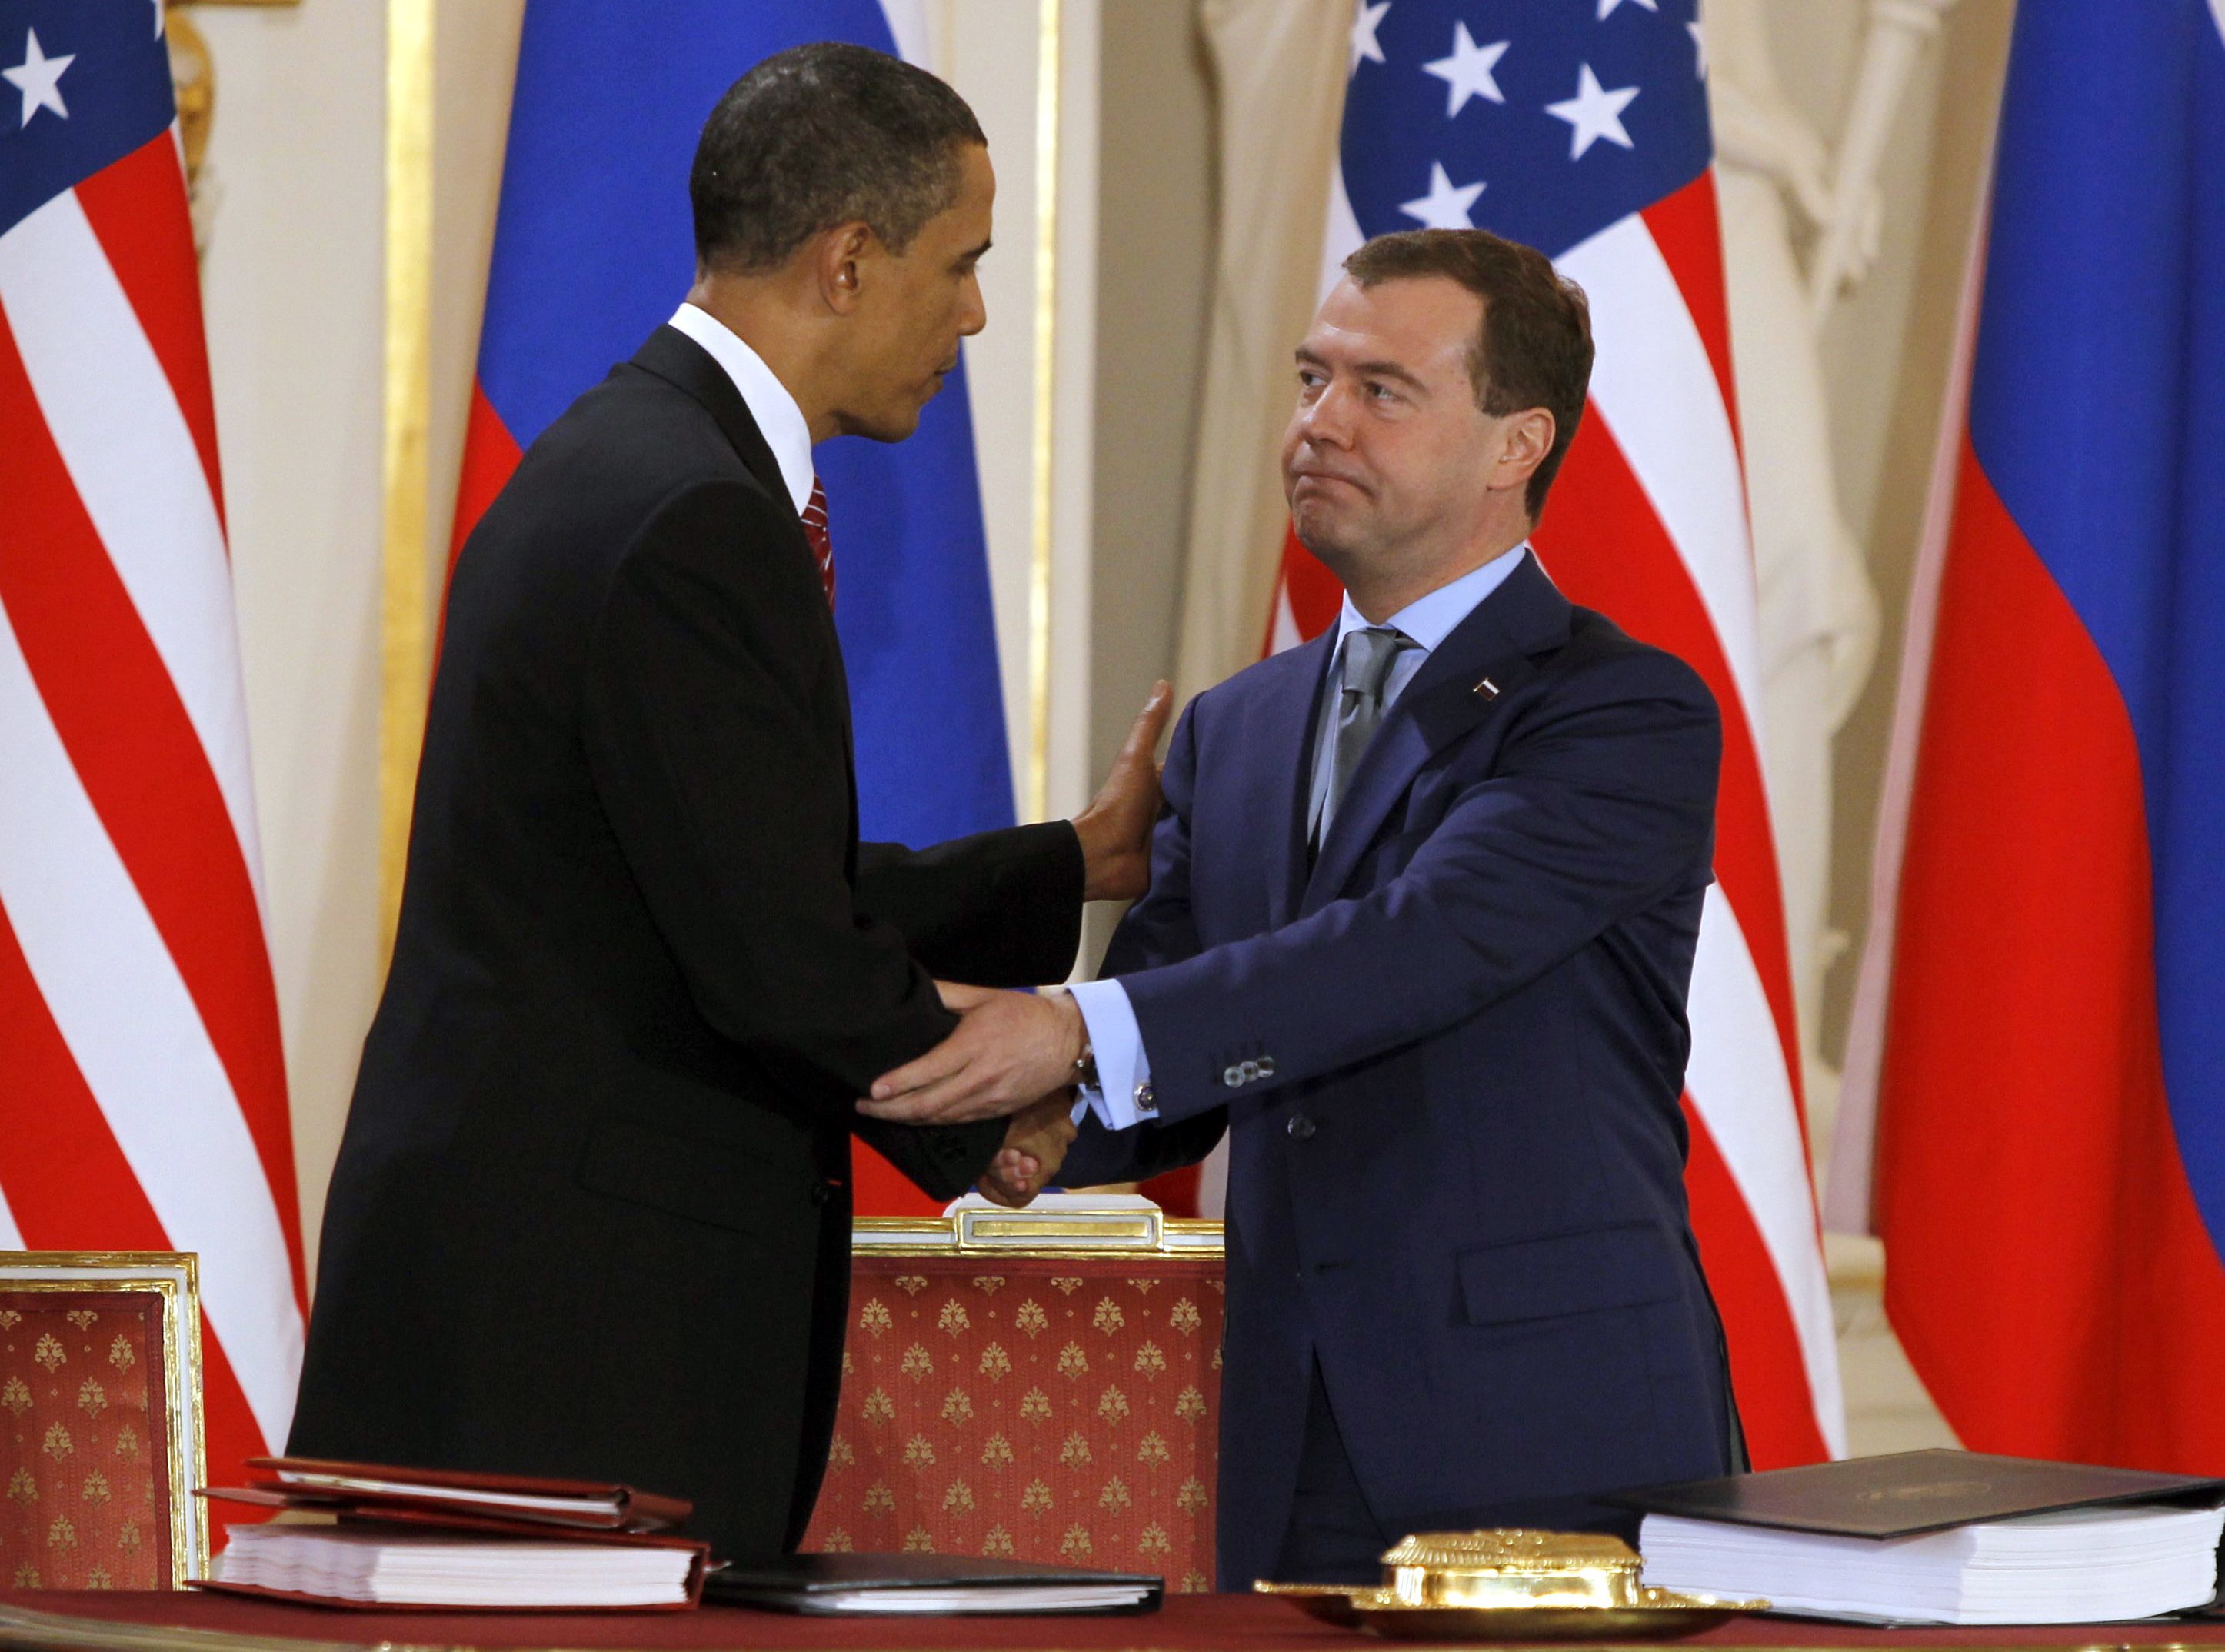 Μπαράκ Ομπάμα και Ντιμίτρι Μεντβέντεφ δίνουν τα χέρια μετά την υποφραφή της συμφωνίας. ΦΩΤΟ REUTERS